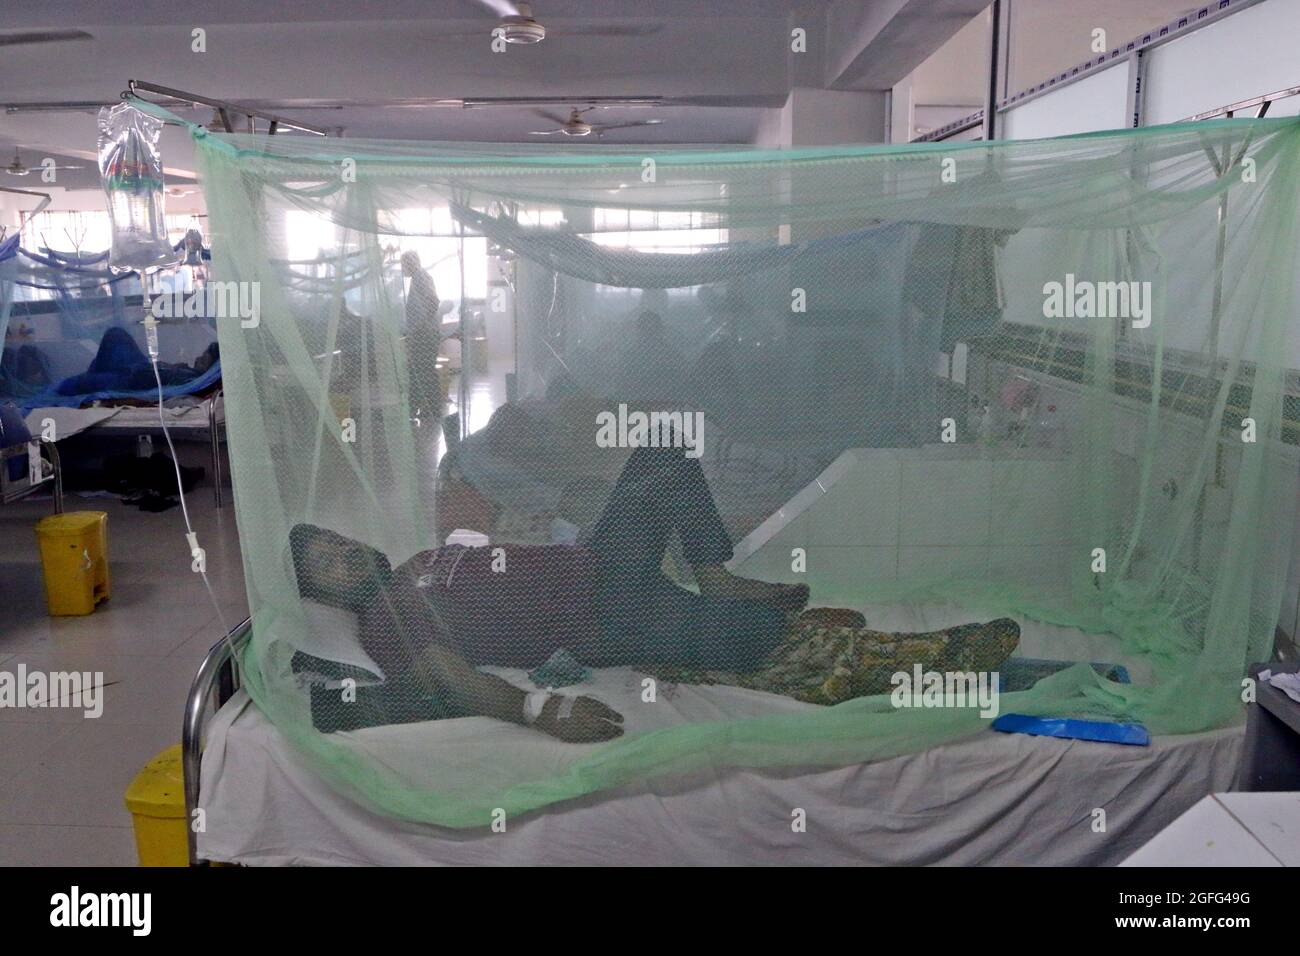 Non esclusiva: DHAKA, BANGLADESH - AGOSTO 25: Un paziente infetto da febbre Dengue, è trattato in una zona speciale per brevetti con malattia di dengue trans Foto Stock